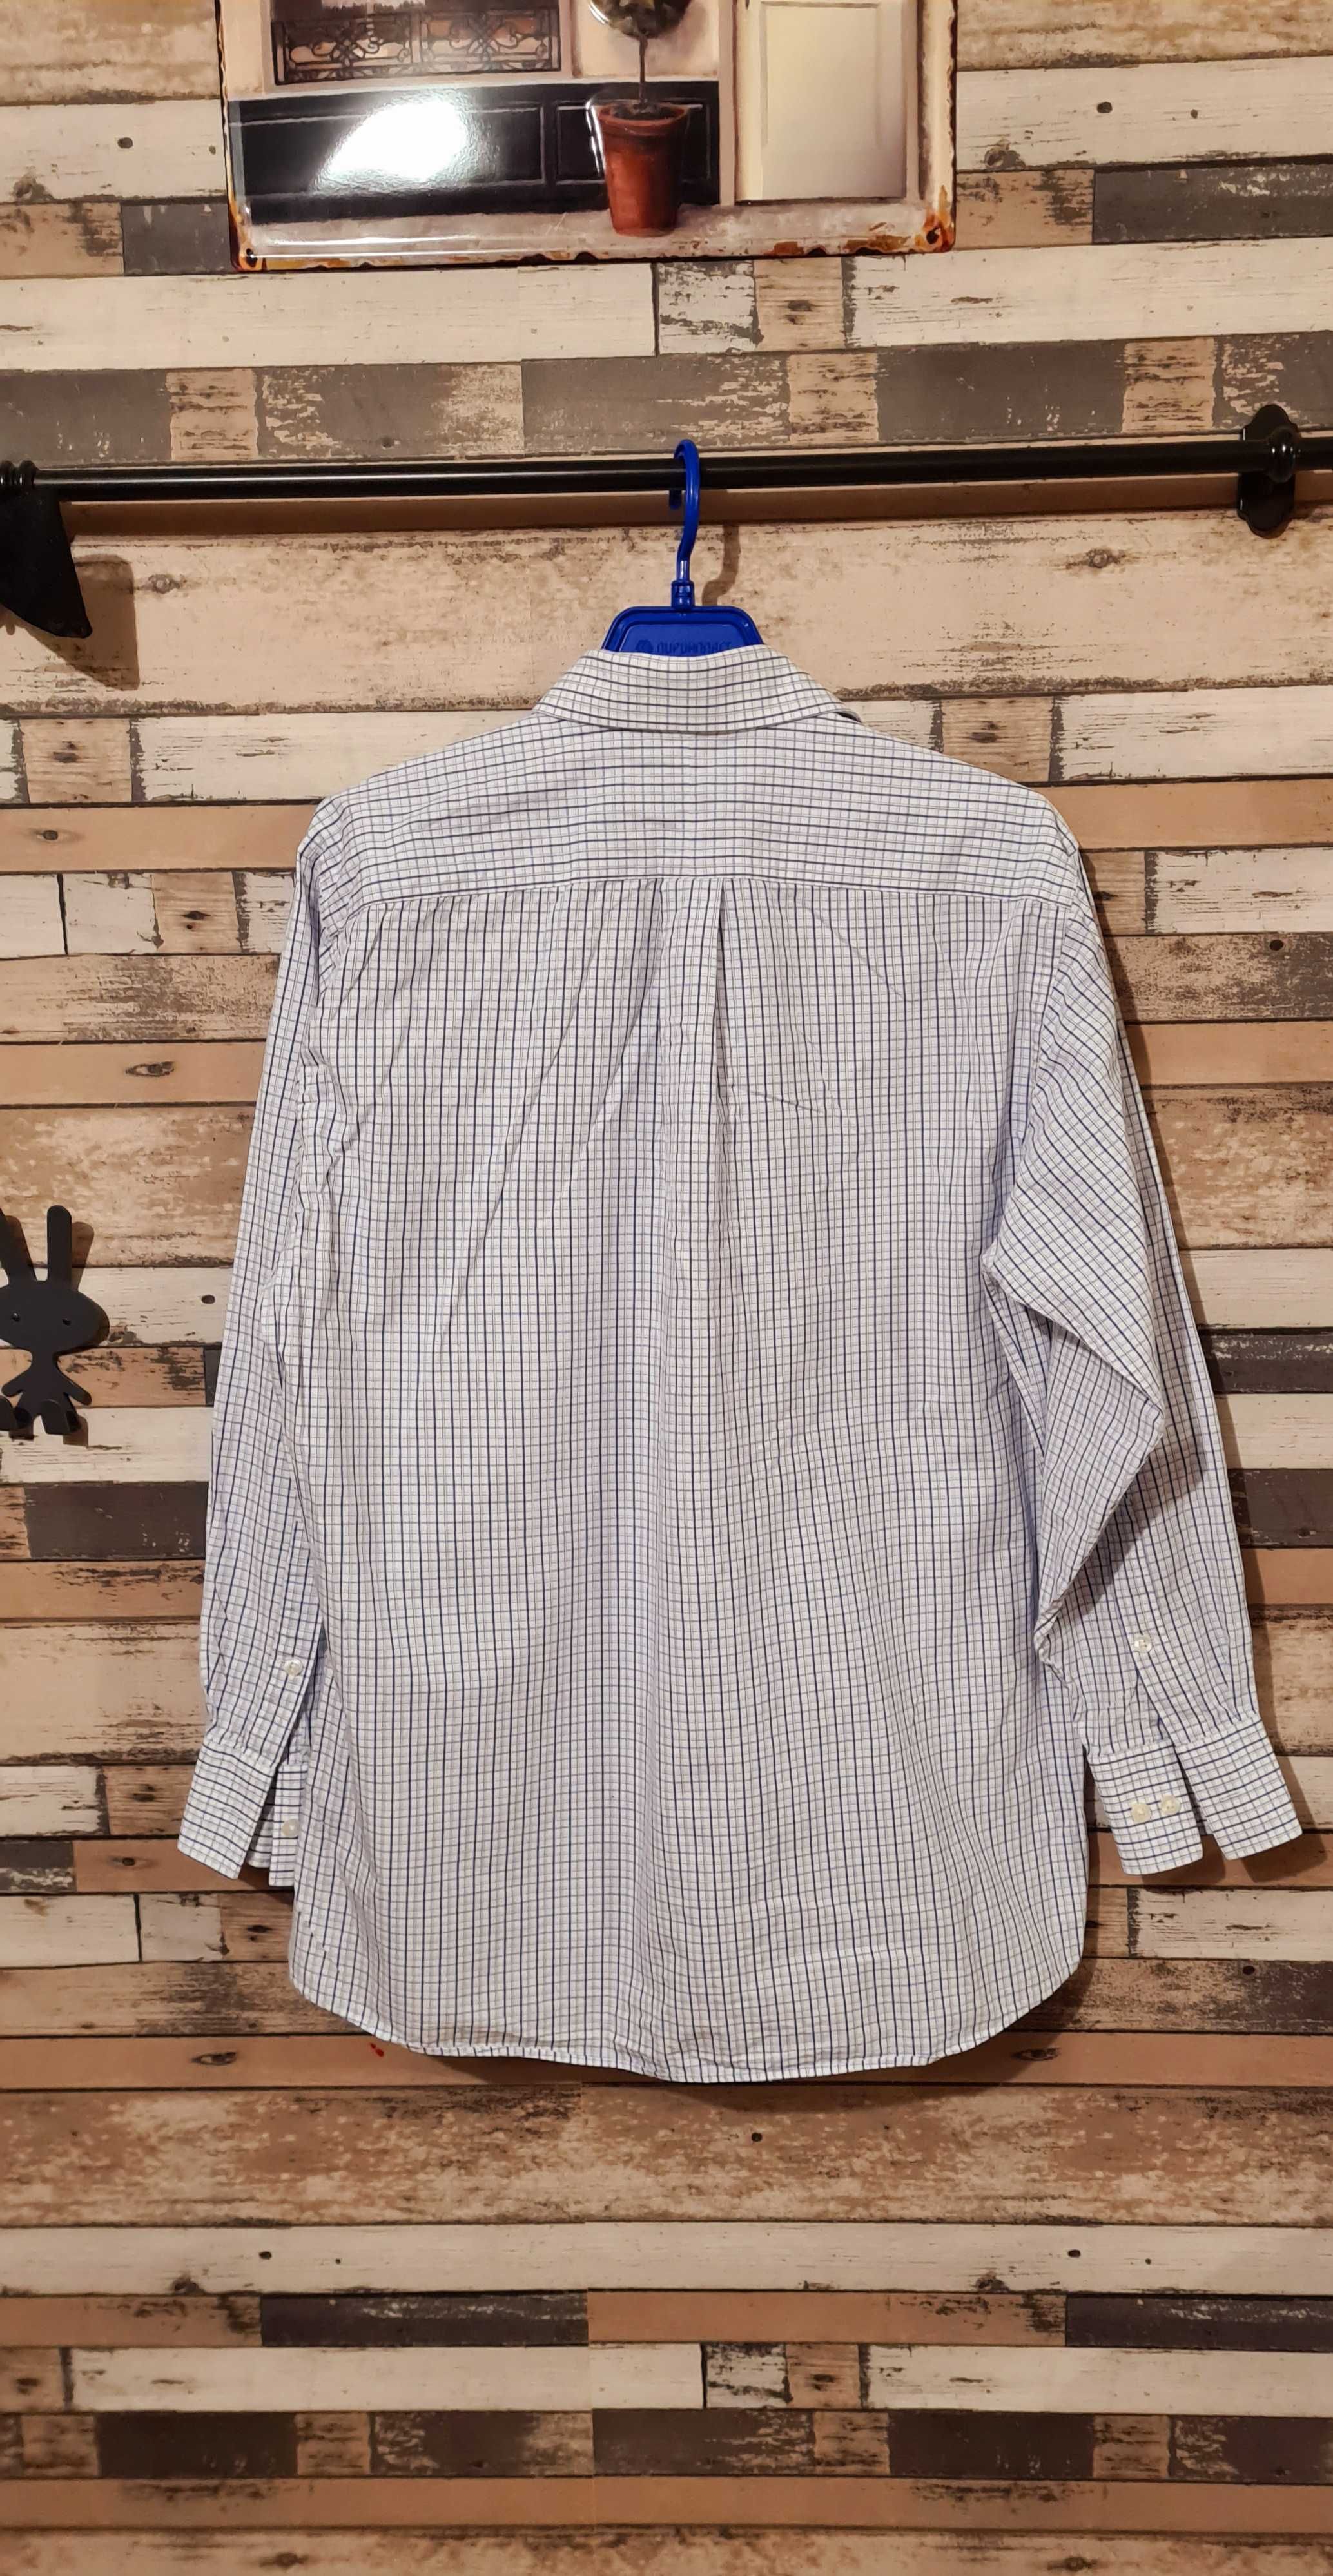 Michael Kors M/L (651)- мъжка риза